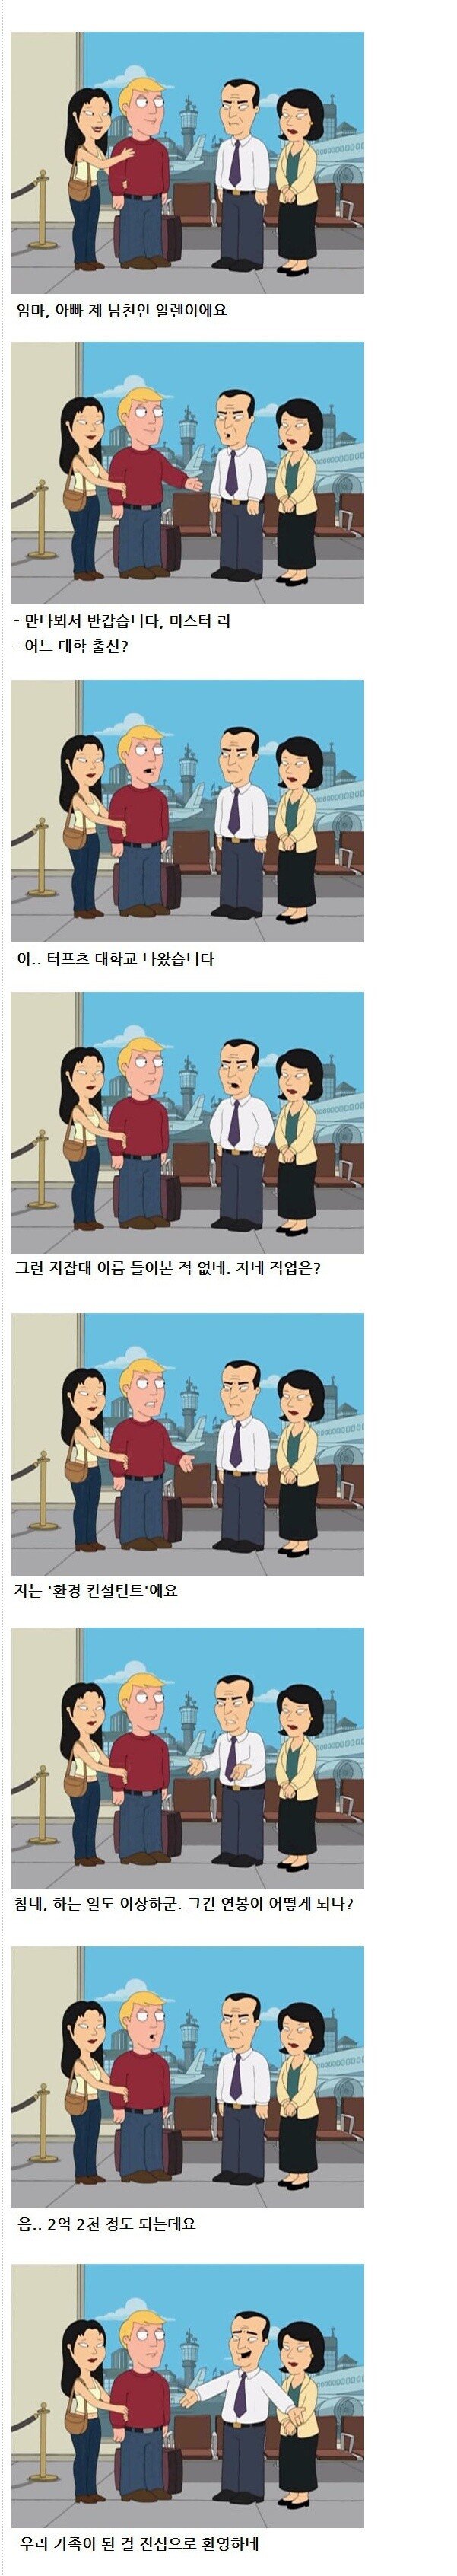 미 애니에 표현된 동양인 부모